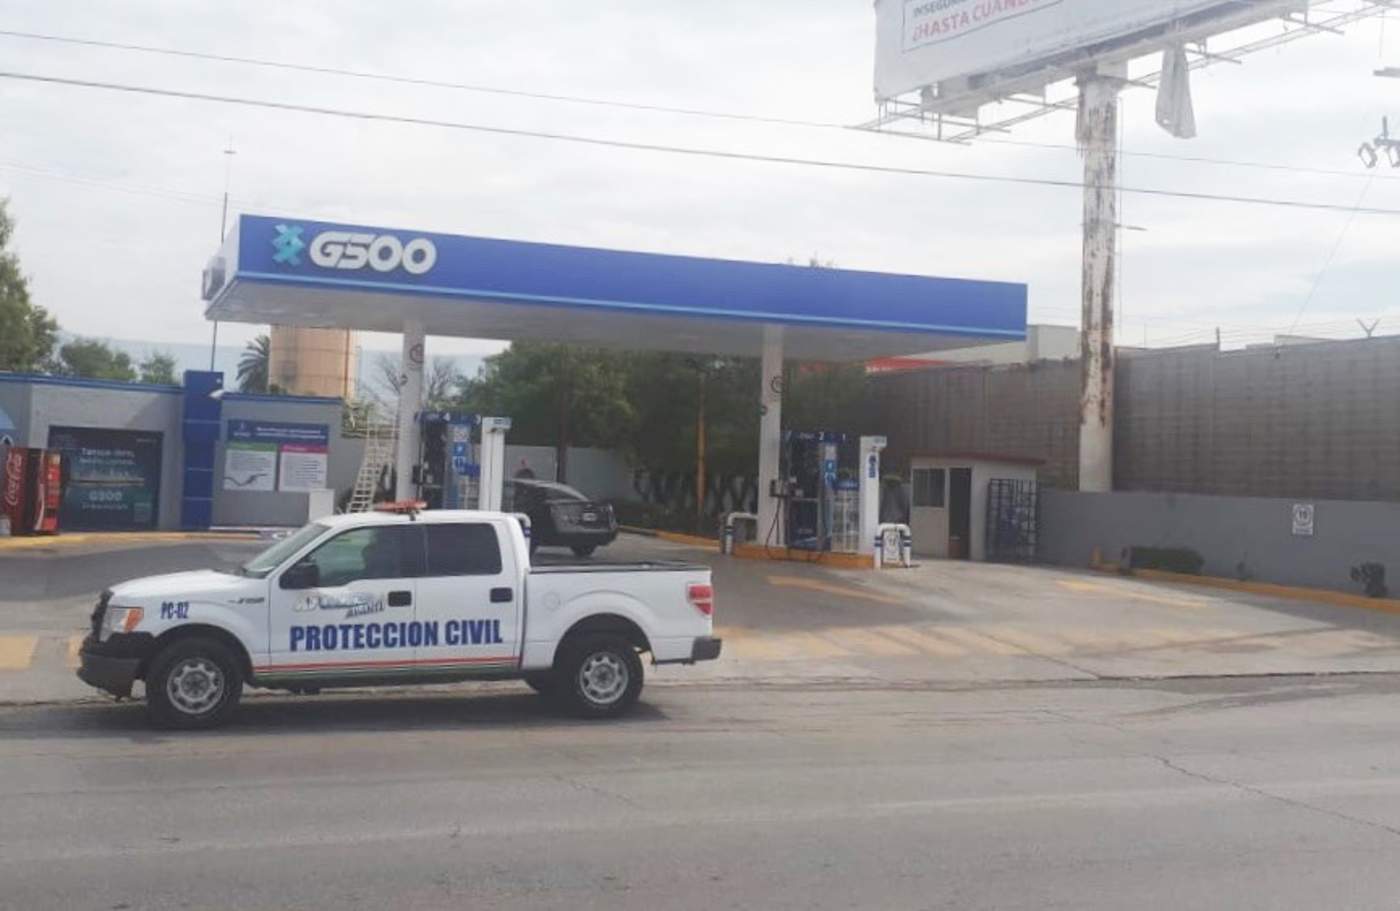 Suspenden suministro de gasolina en fines de semana en Monclova